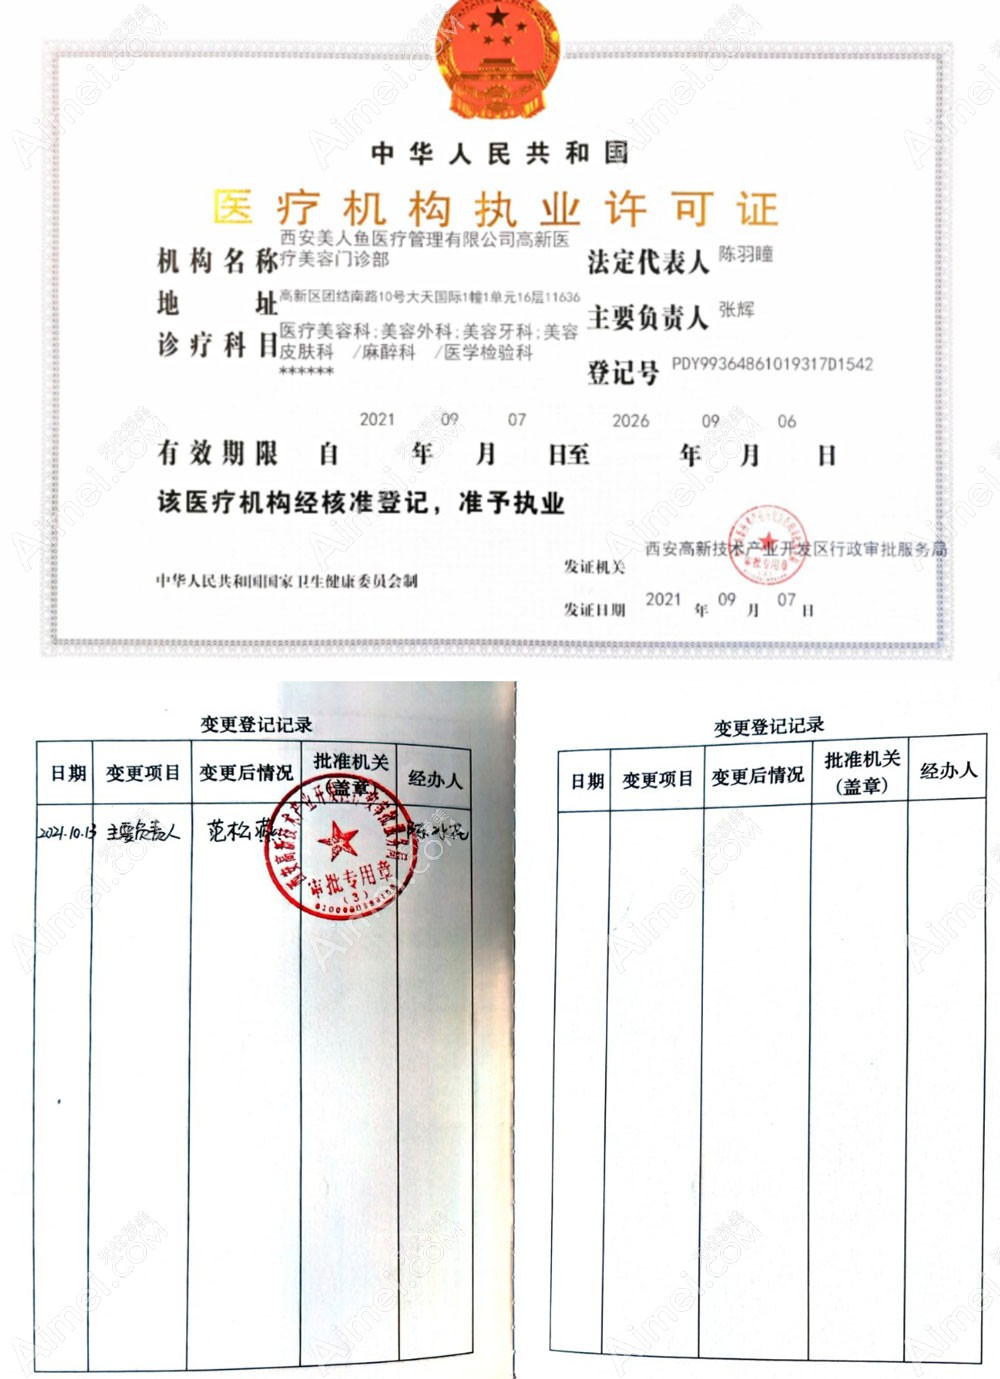 西安美人鱼医疗美容门诊部医疗机构执业许可证